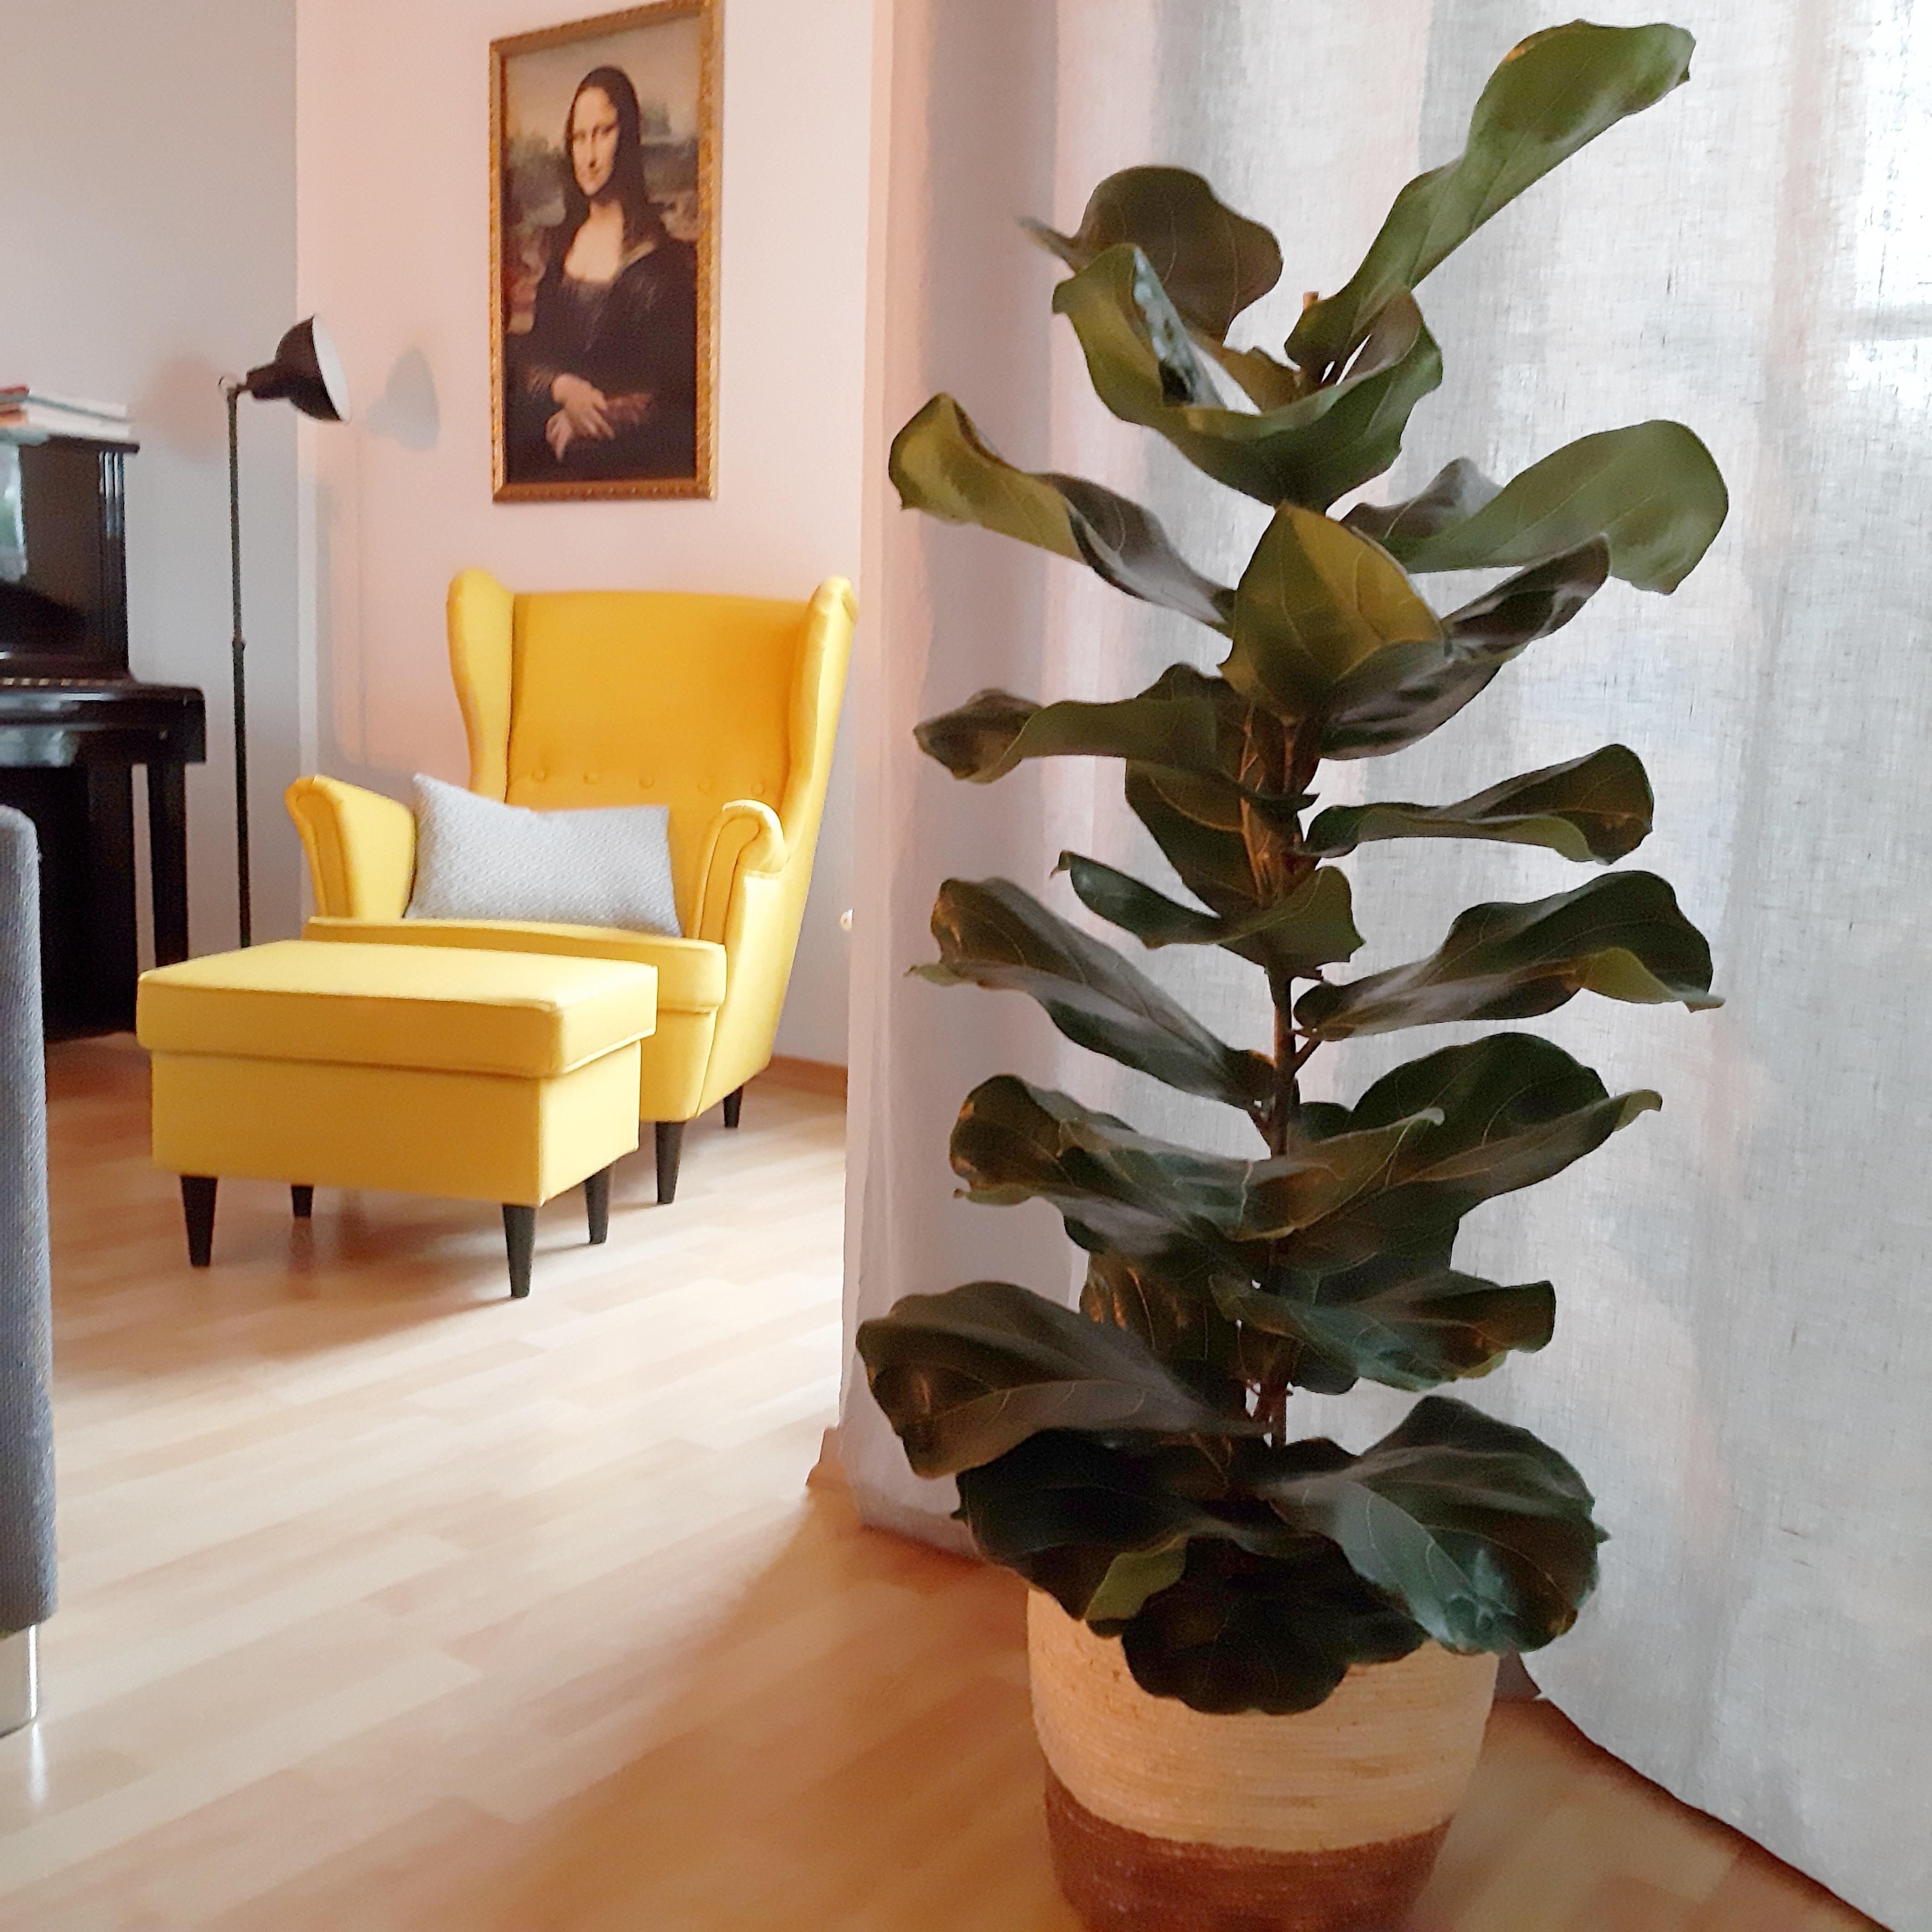 Meine gemütliche Ecke im #wohnzimmer mit quietschgelbem Ohrensessel. #couchstyle #pflanzen #gemütlich